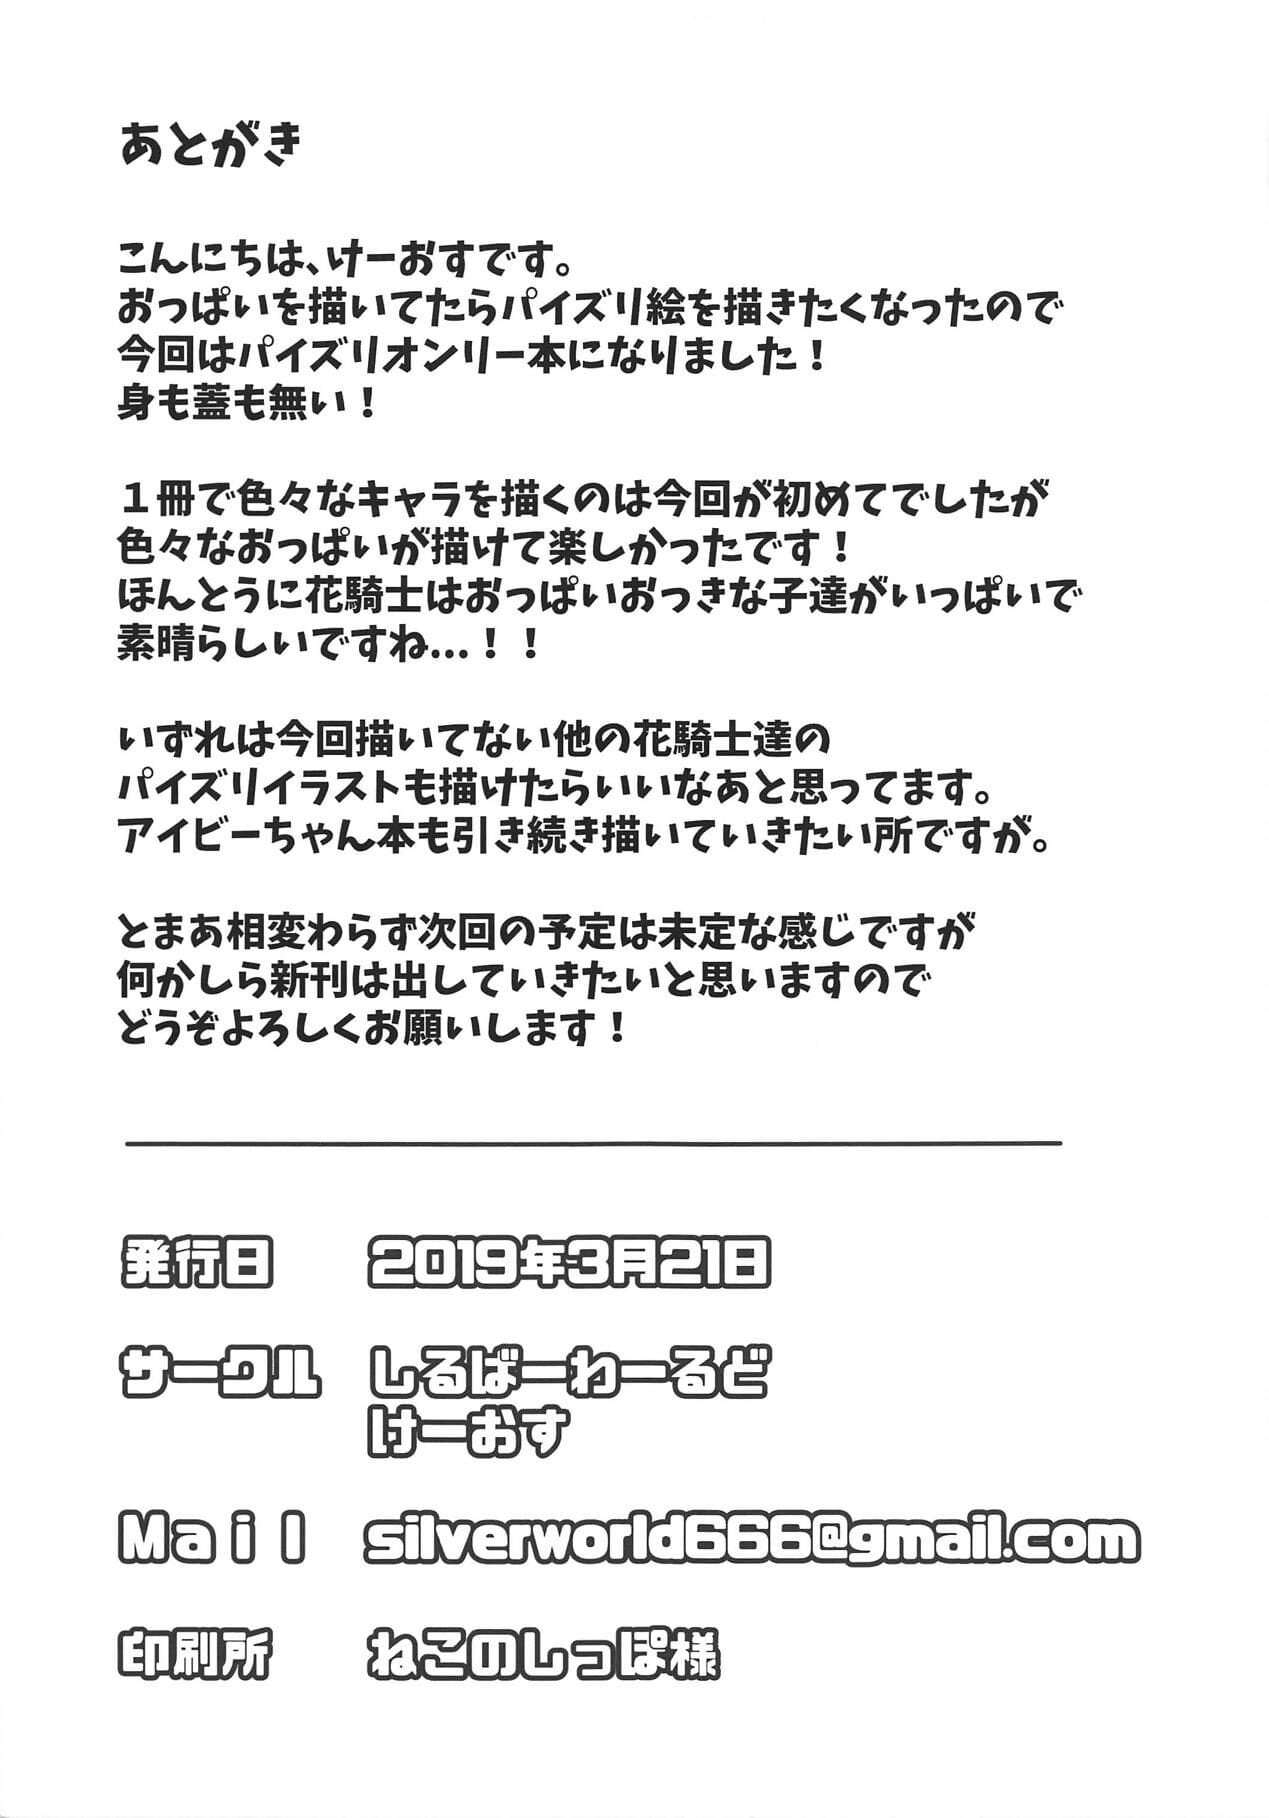 ฮานะ Kishi paizuri ทาน page 1